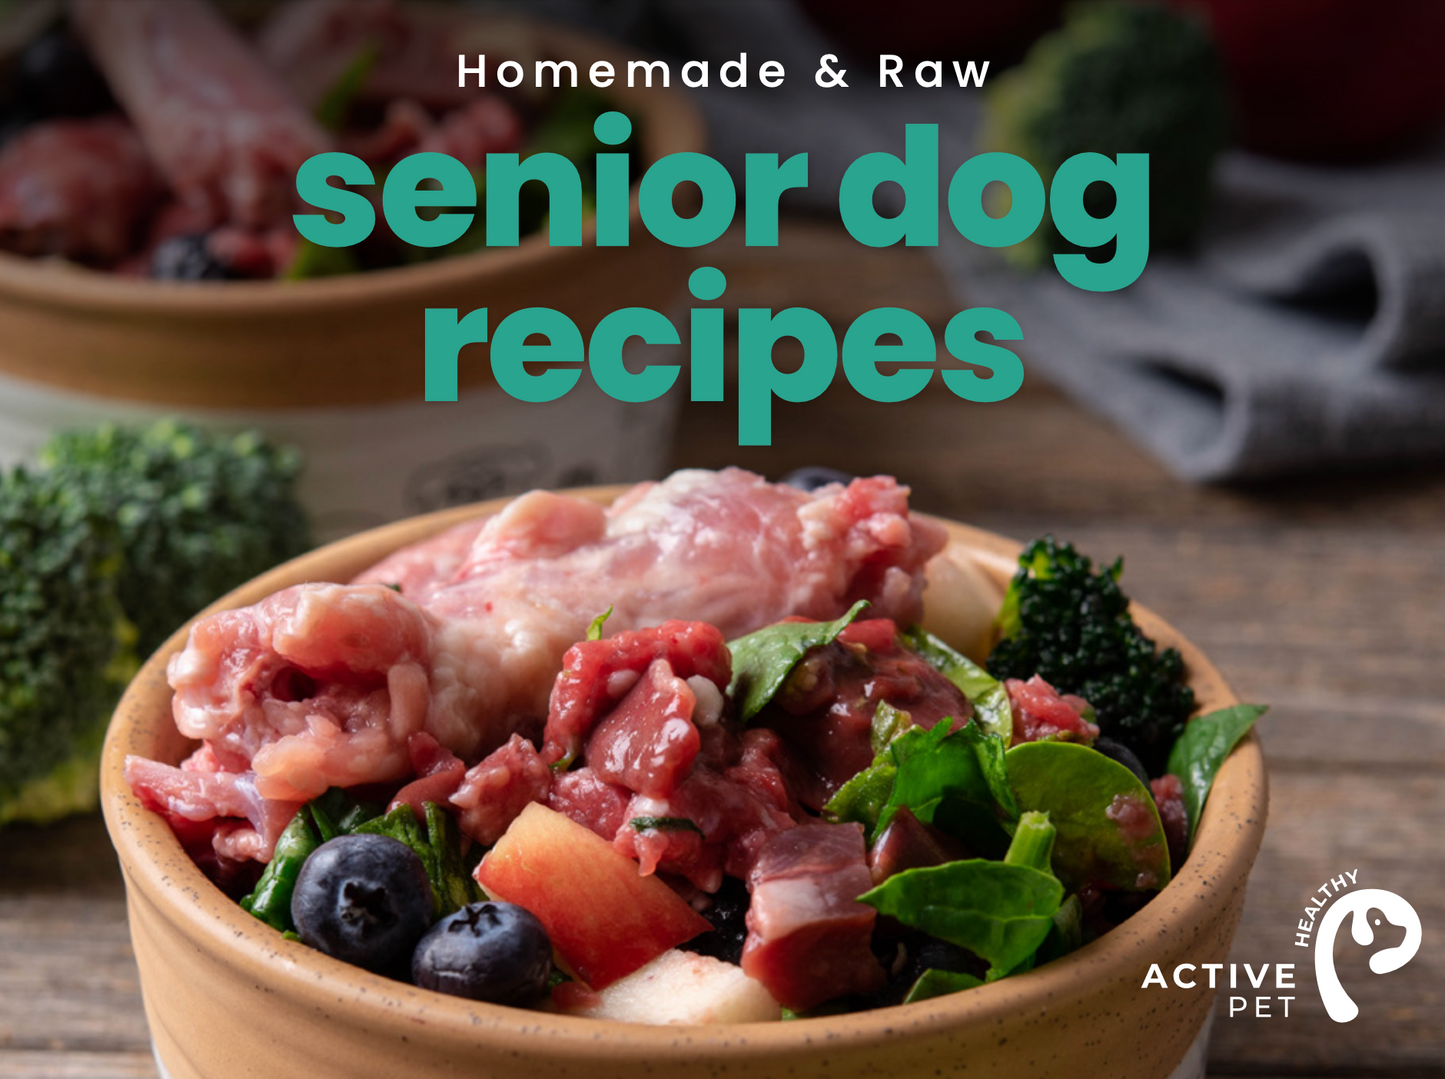 Homemade Dog Food For Senior Dogs Recipe eBook